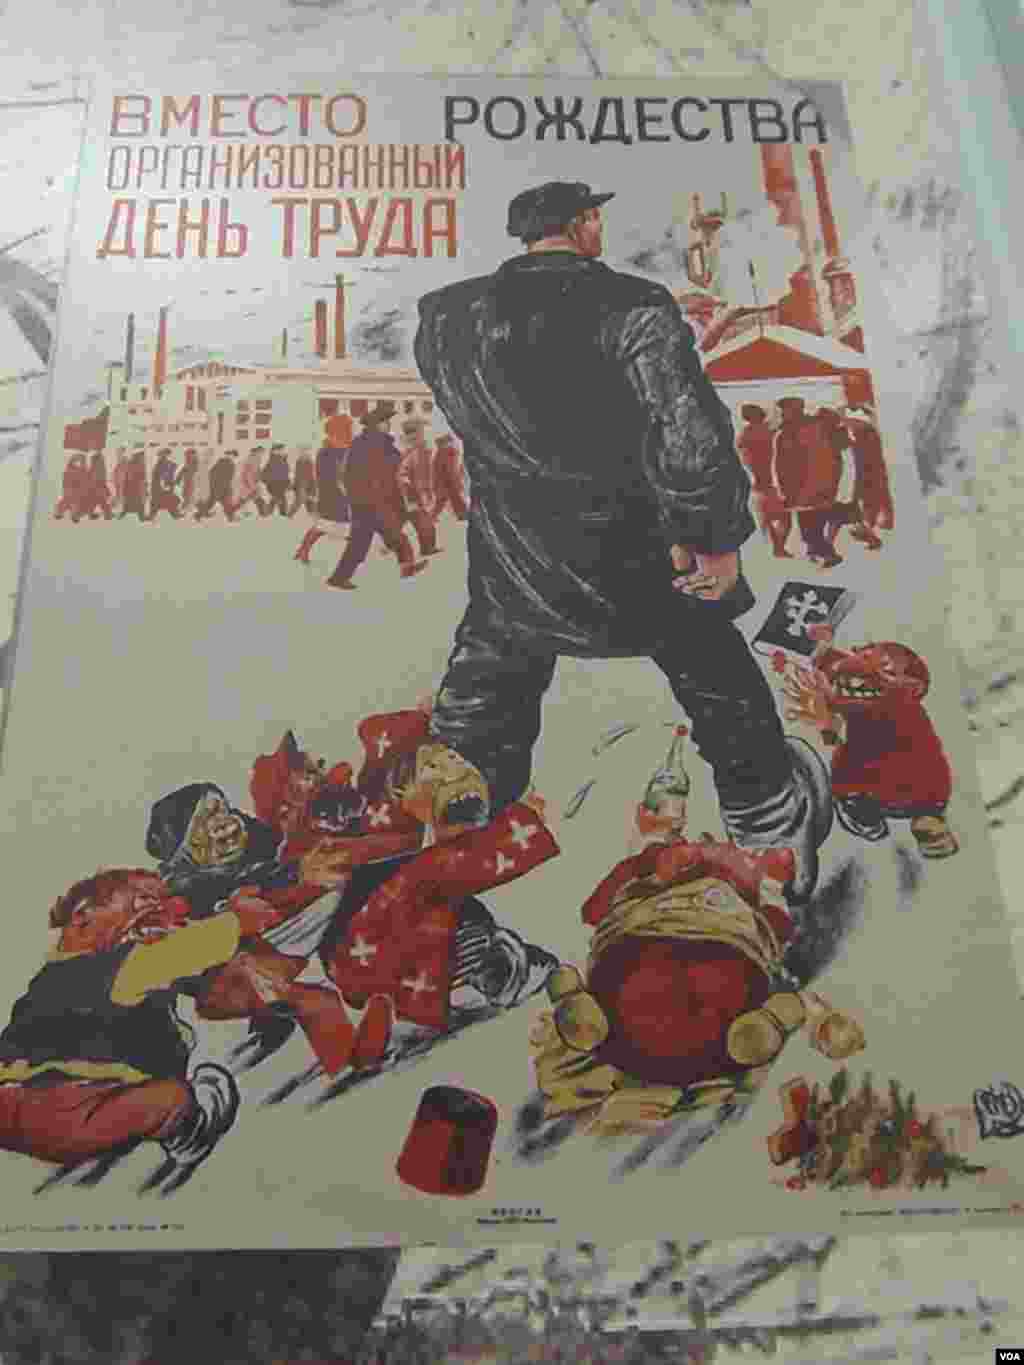 苏联反宗教宣传画。用劳动日取代圣诞节。